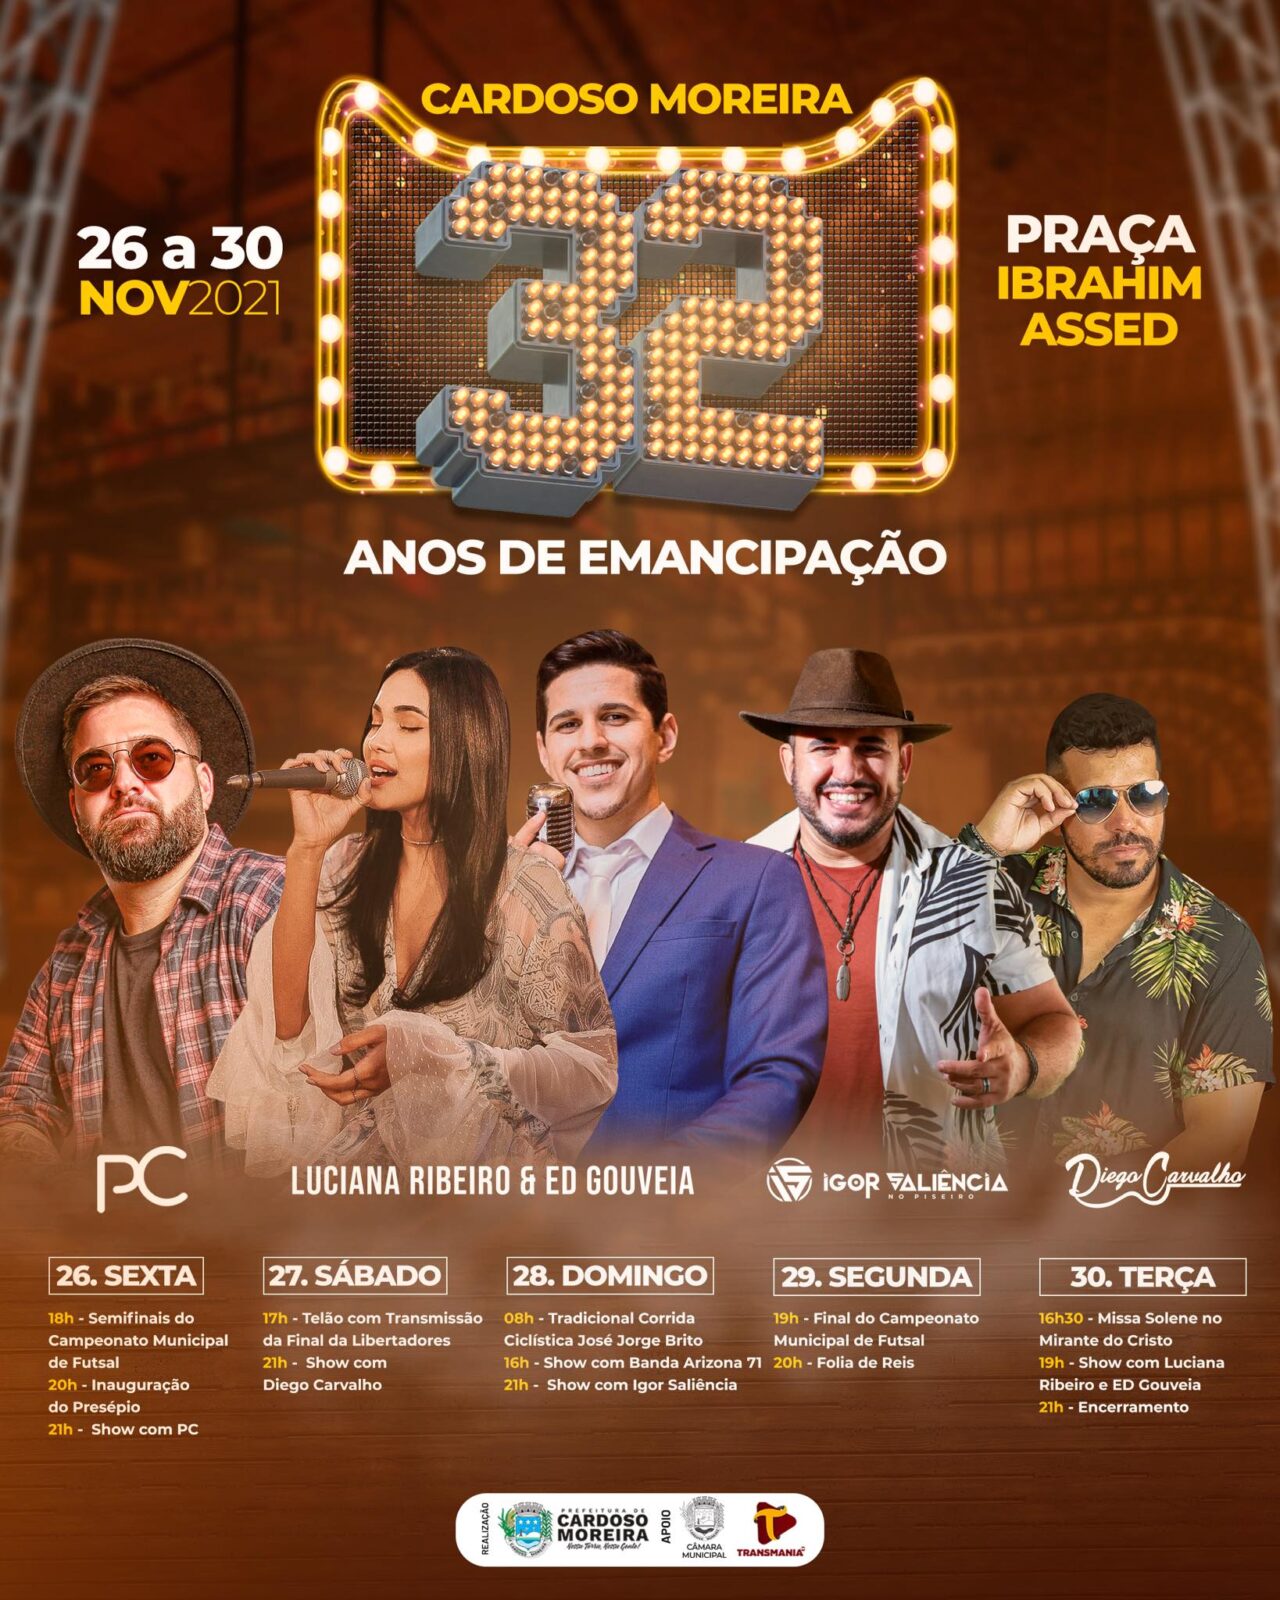 Cardoso Moreira celebra 32 anos e terá cinco dias de festa com shows